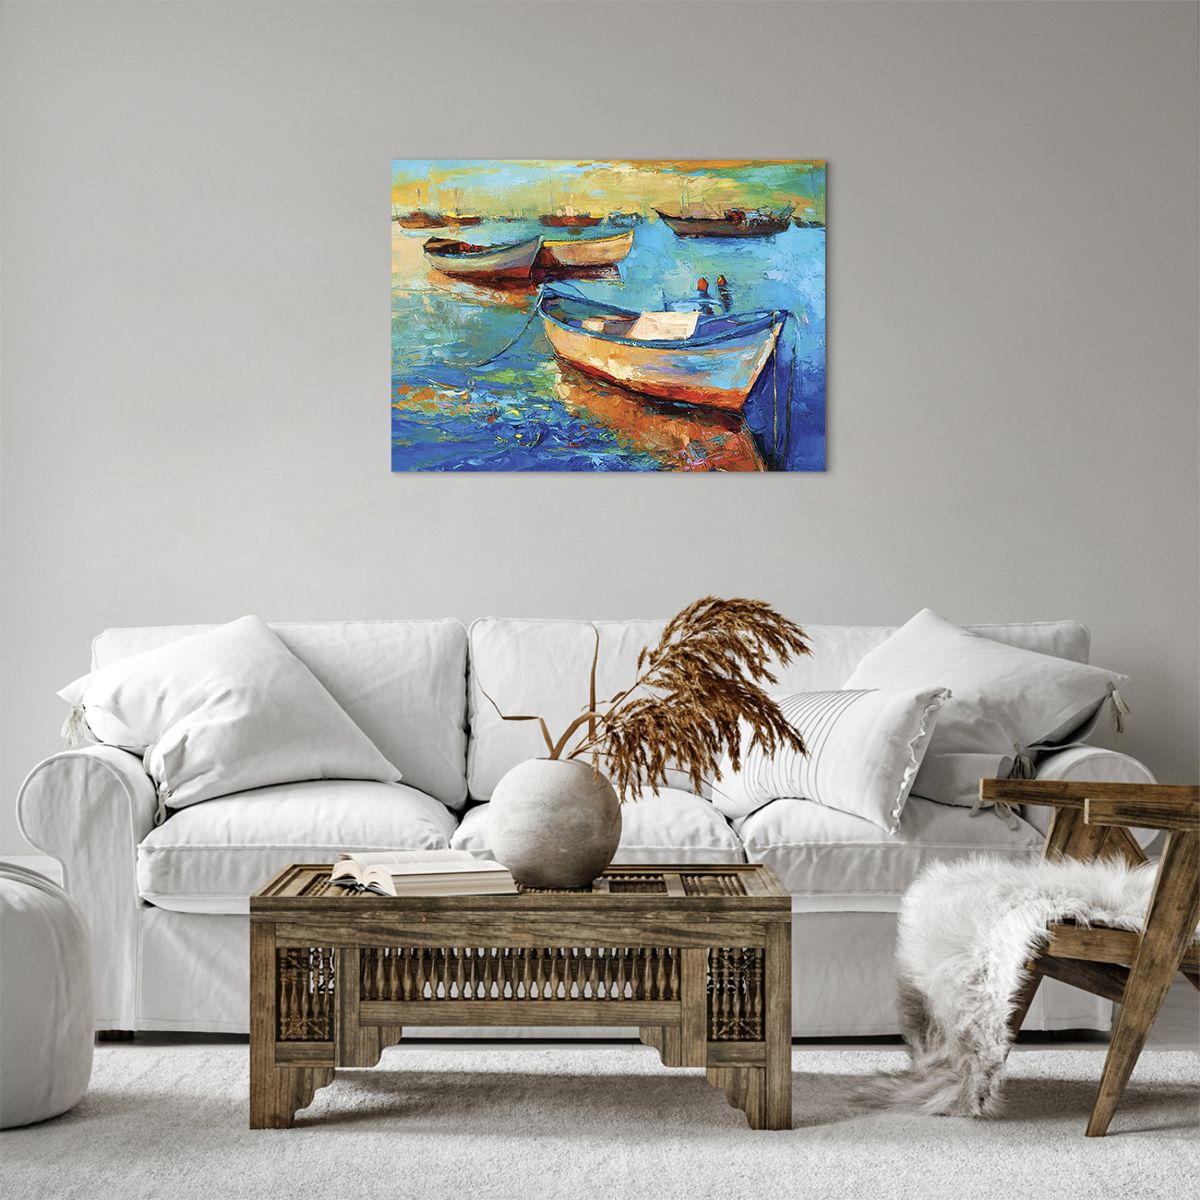 Bild auf Leinwand Landschaft, Bild auf Leinwand Fischereihafen, Bild auf Leinwand Fischerboot, Bild auf Leinwand Kunst, Bild auf Leinwand Malerei